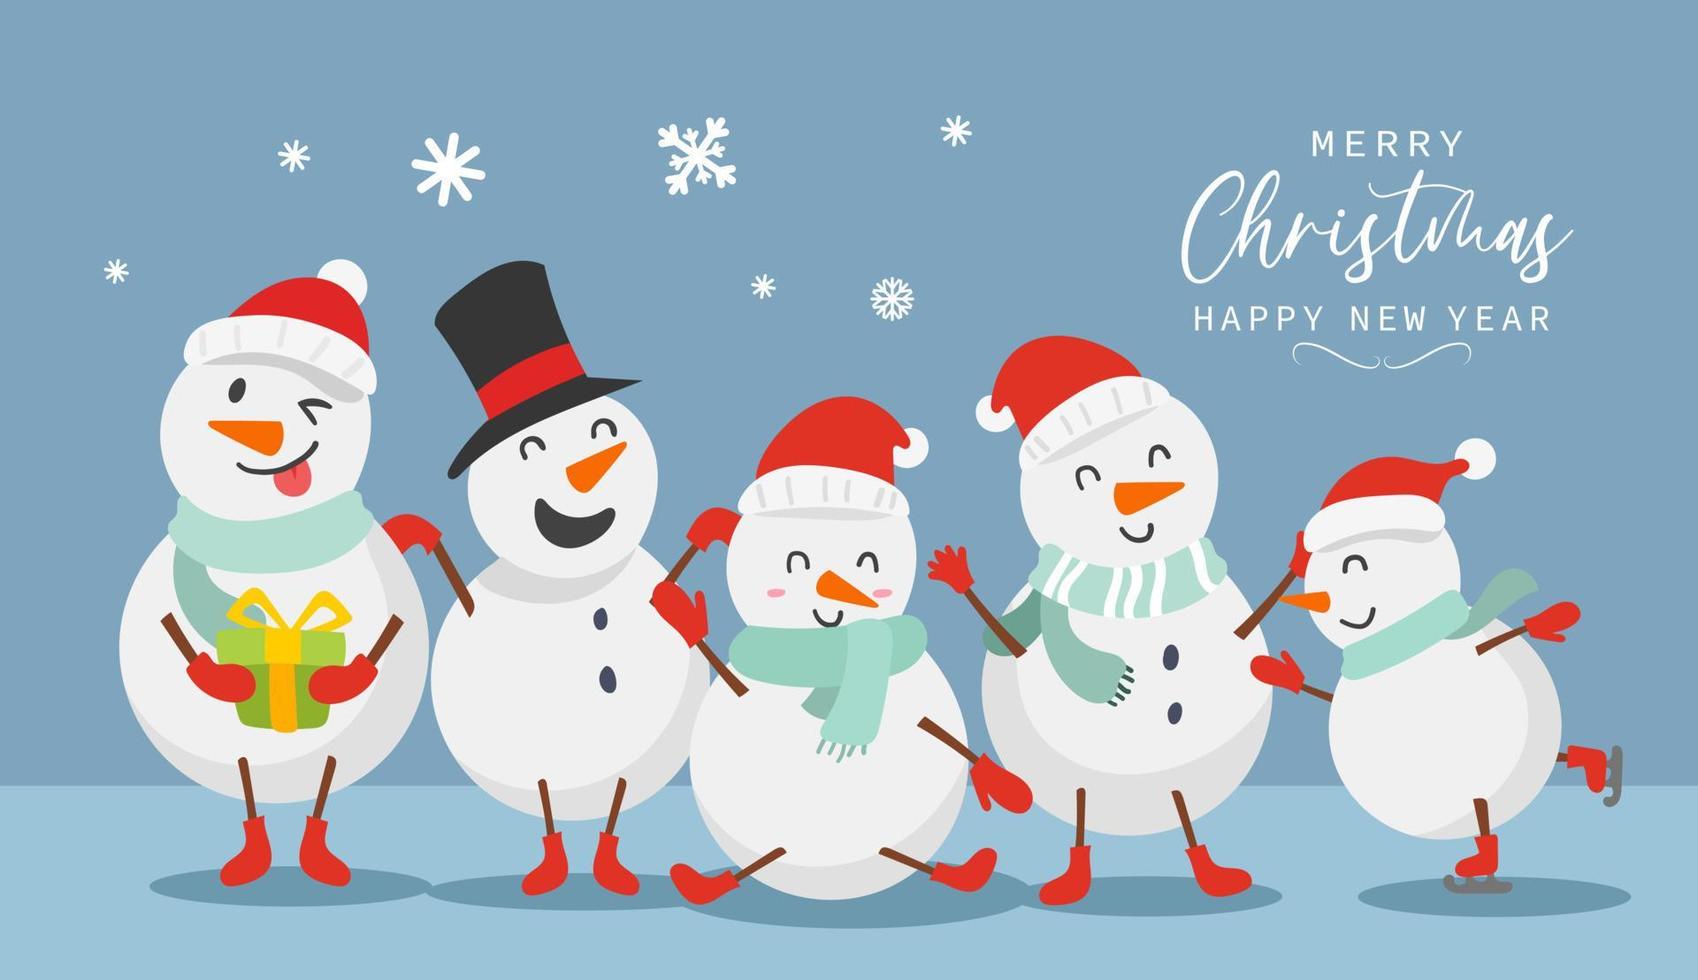 biglietto di auguri di buon natale e felice anno nuovo con un simpatico pupazzo di neve dal design divertente e felice in stile piatto. illustrazione vettoriale